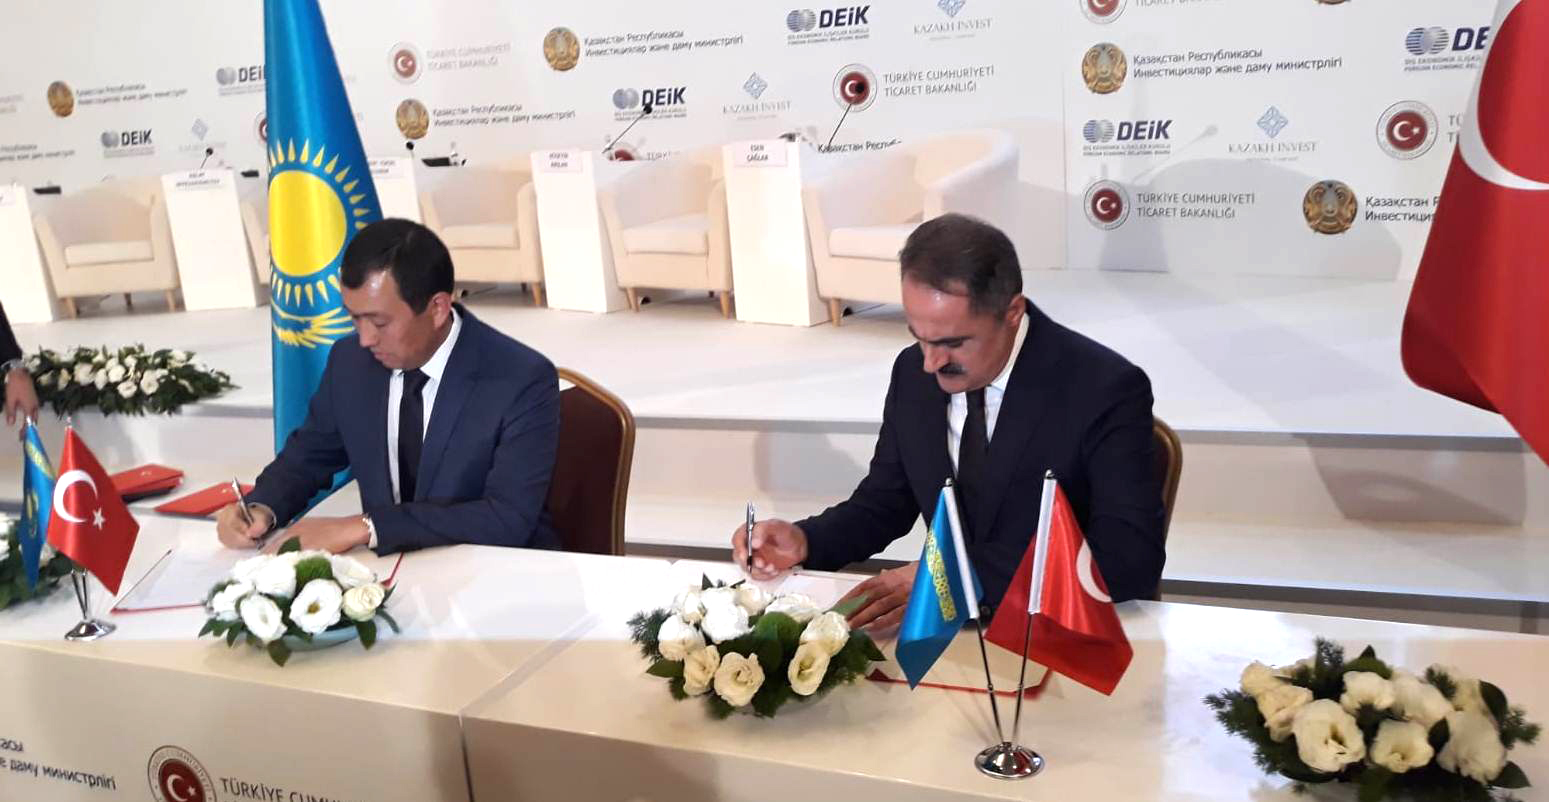 Железнодорожные администрации Казахстана и Турции подписали в Анкаре соглашение о стратегическом сотрудничестве